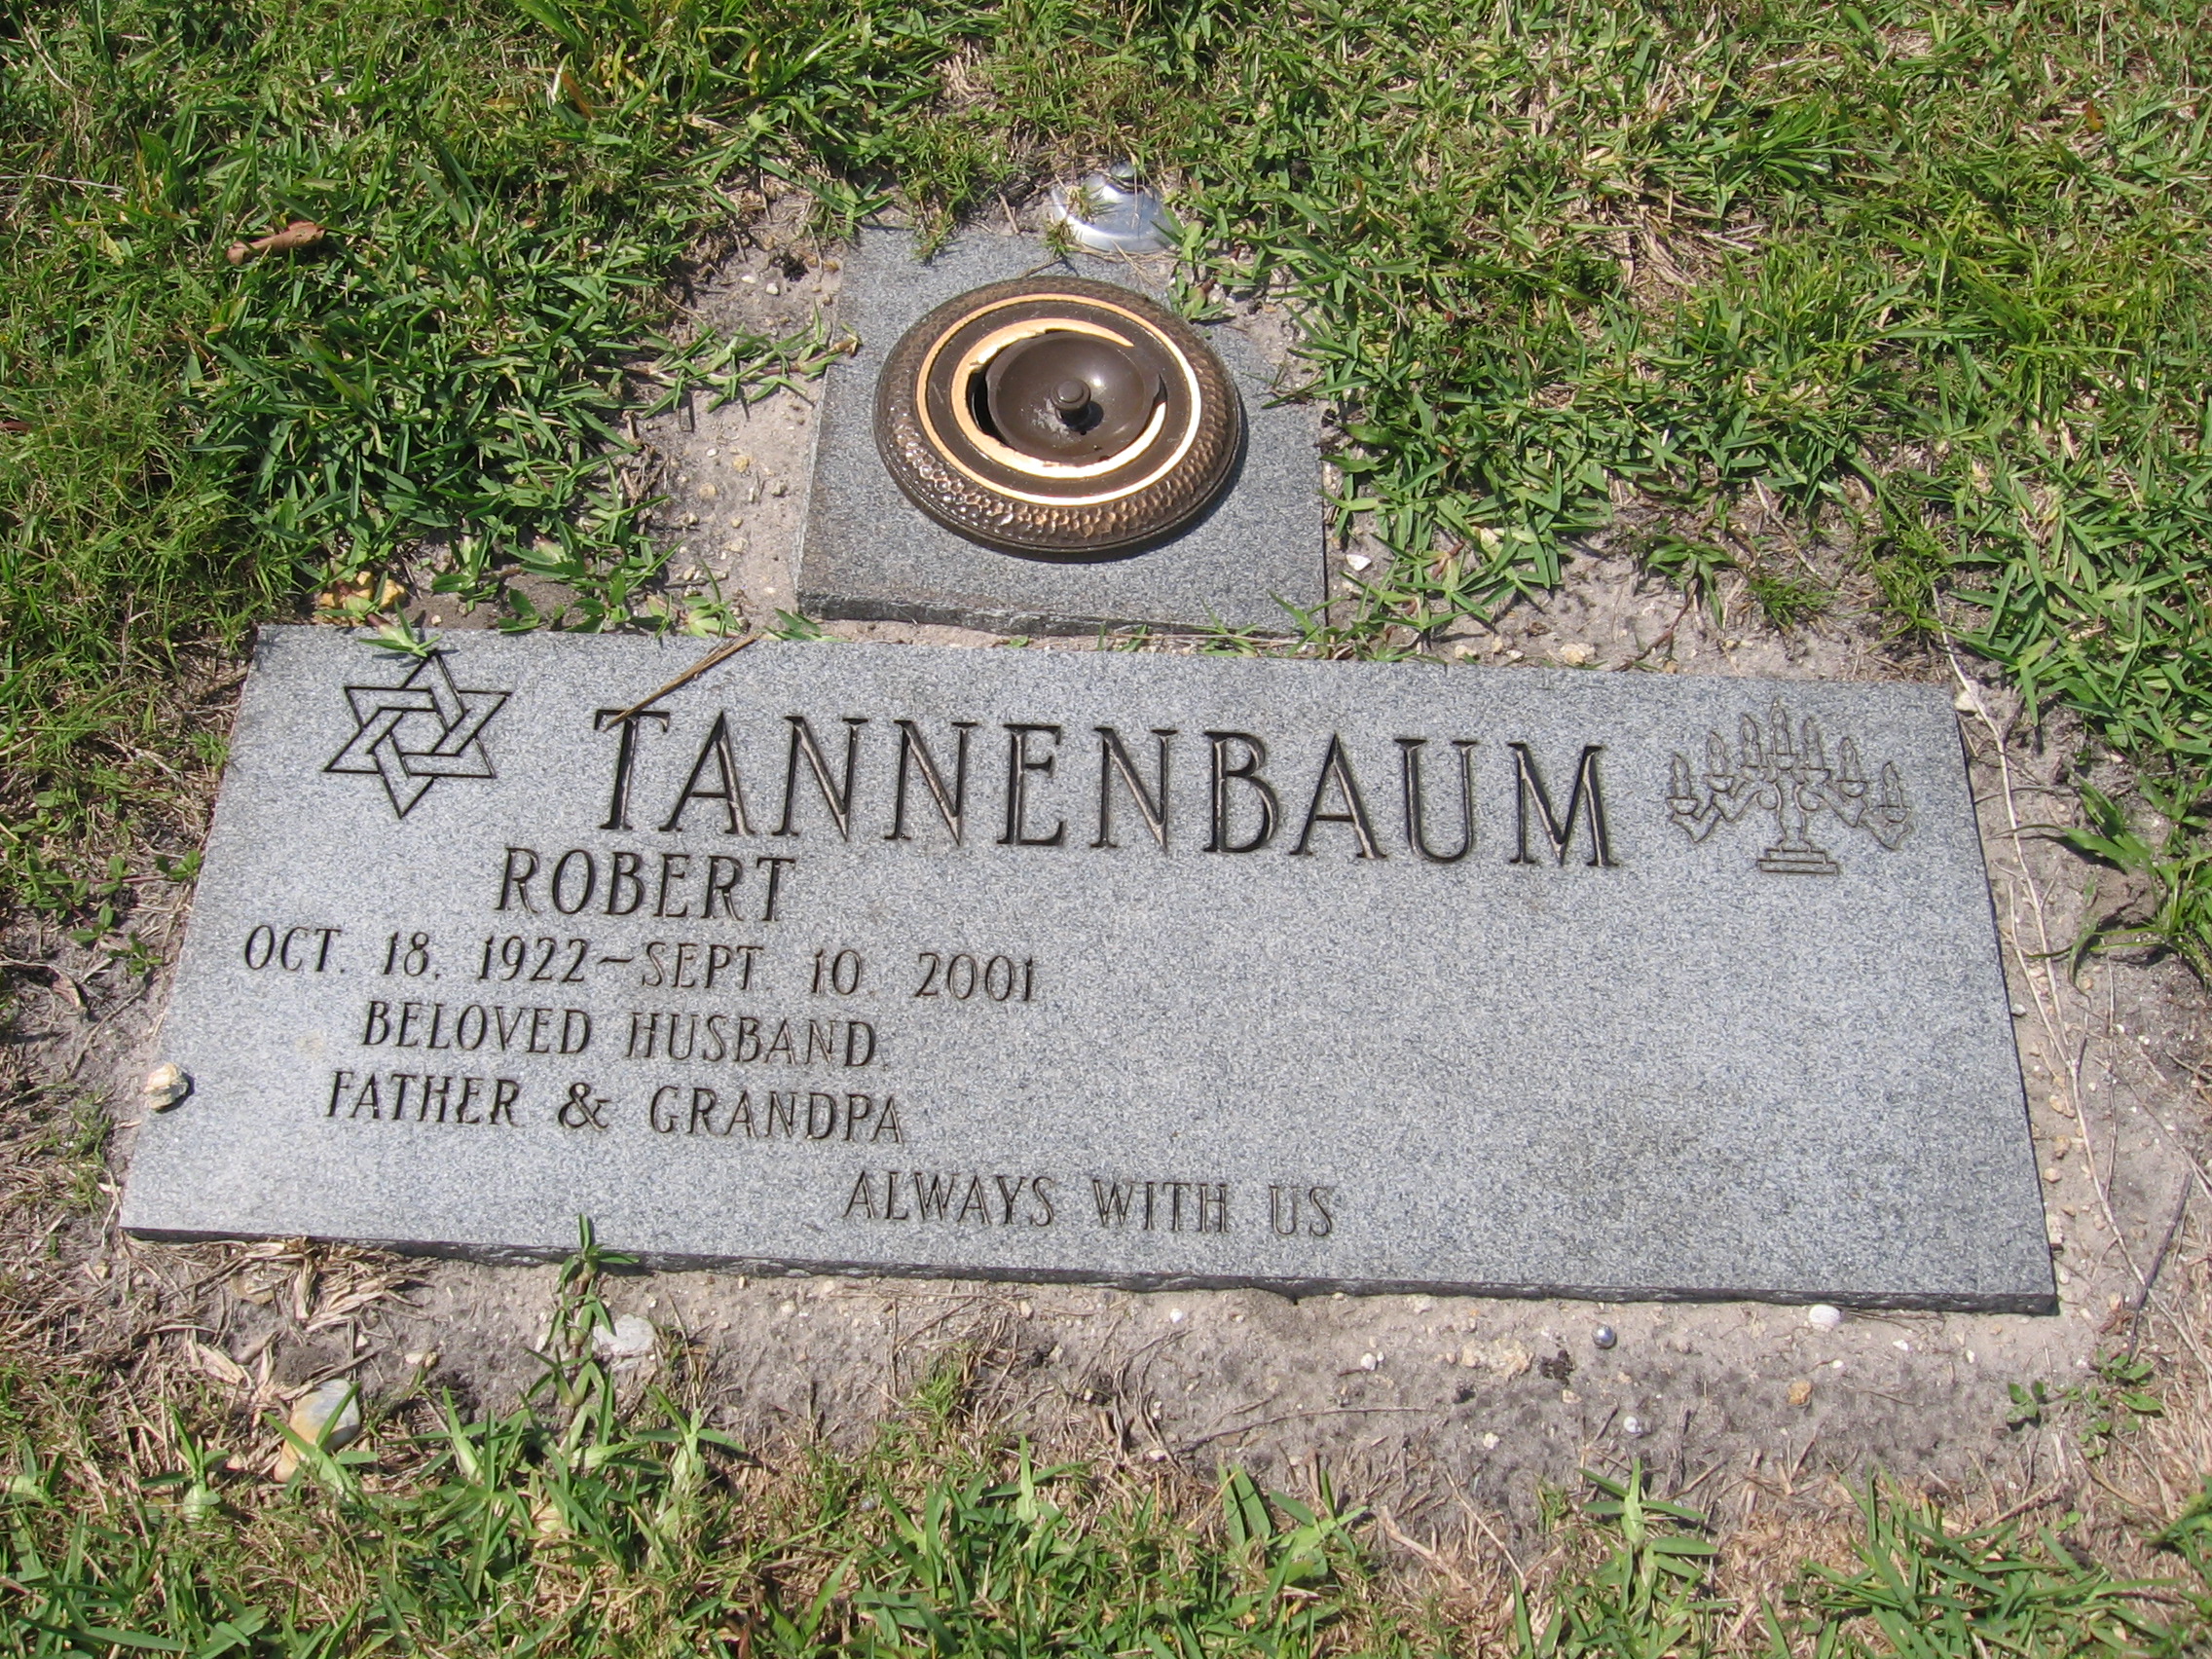 Robert Tannenbaum